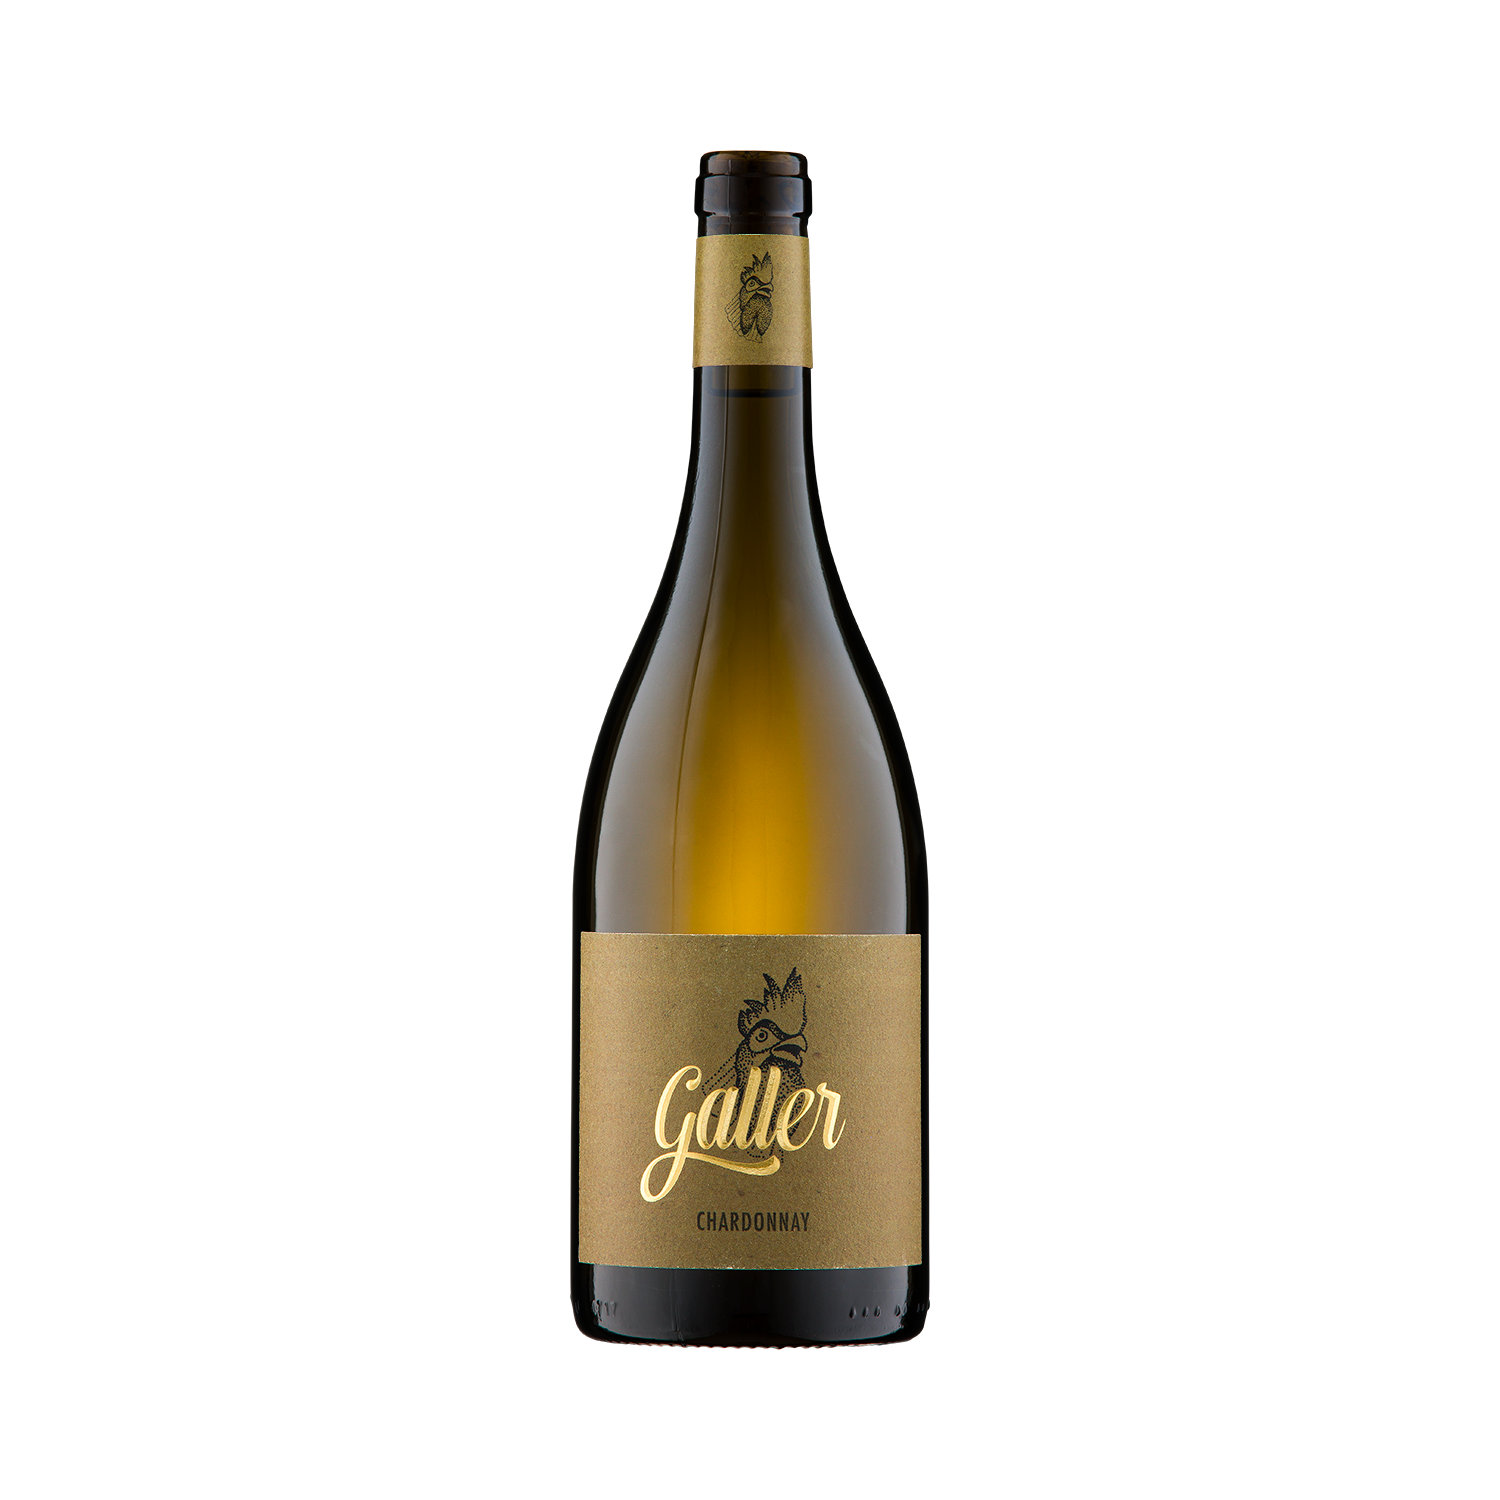  Galler ► Sauvignac „Fumé“ Spätlese trocken 0,75 L Weißwein